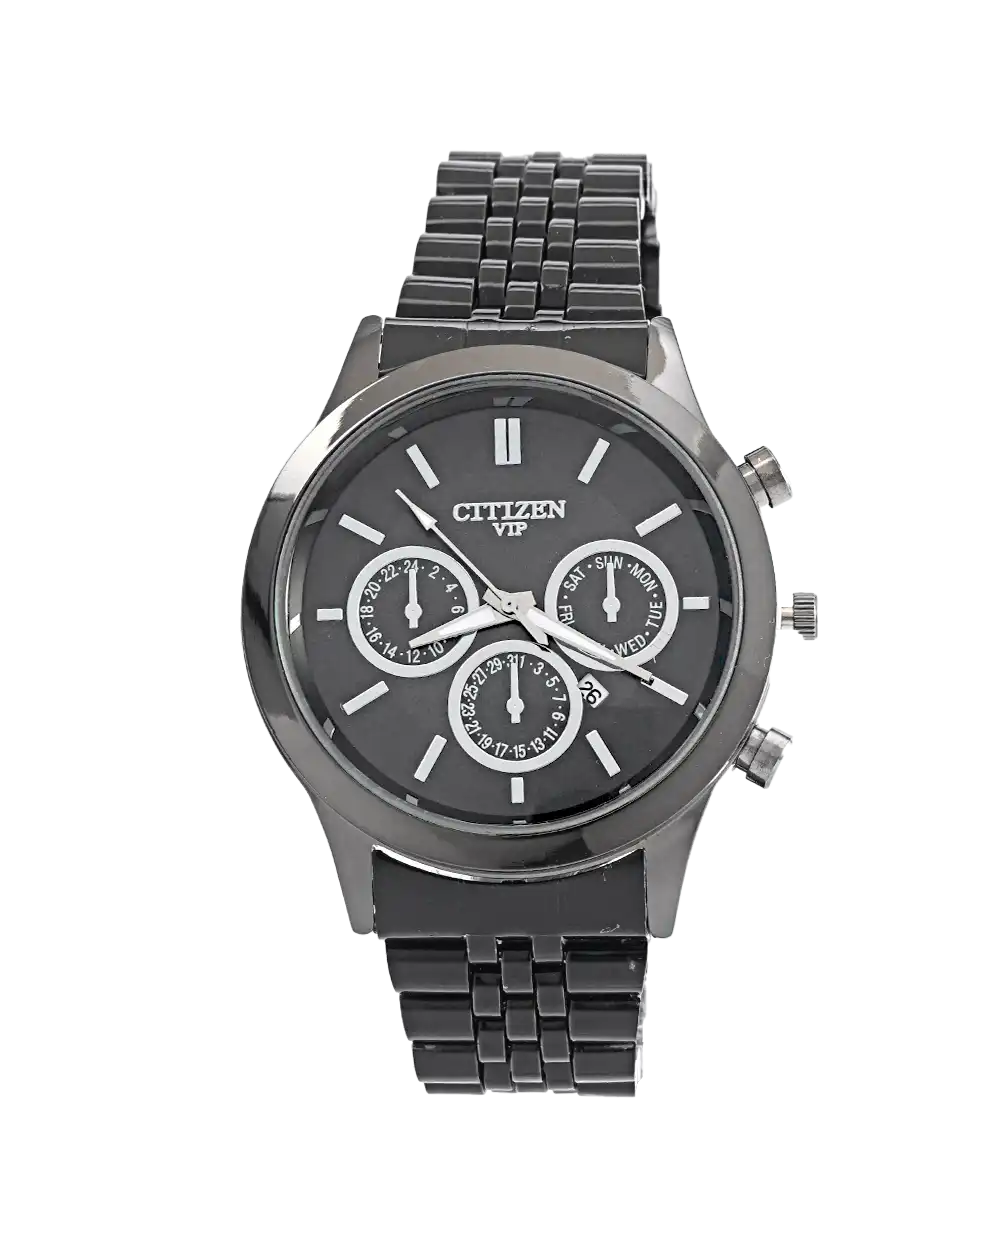 خرید ساعت مچی مردانه سیتیزن CITIZEN طرح VIP مدل 1692 رنگ مشکی با بهترین قیمت به همراه ارسال رایگان و جعبه ی ساعت | ساعت تمام مشکی مردانه